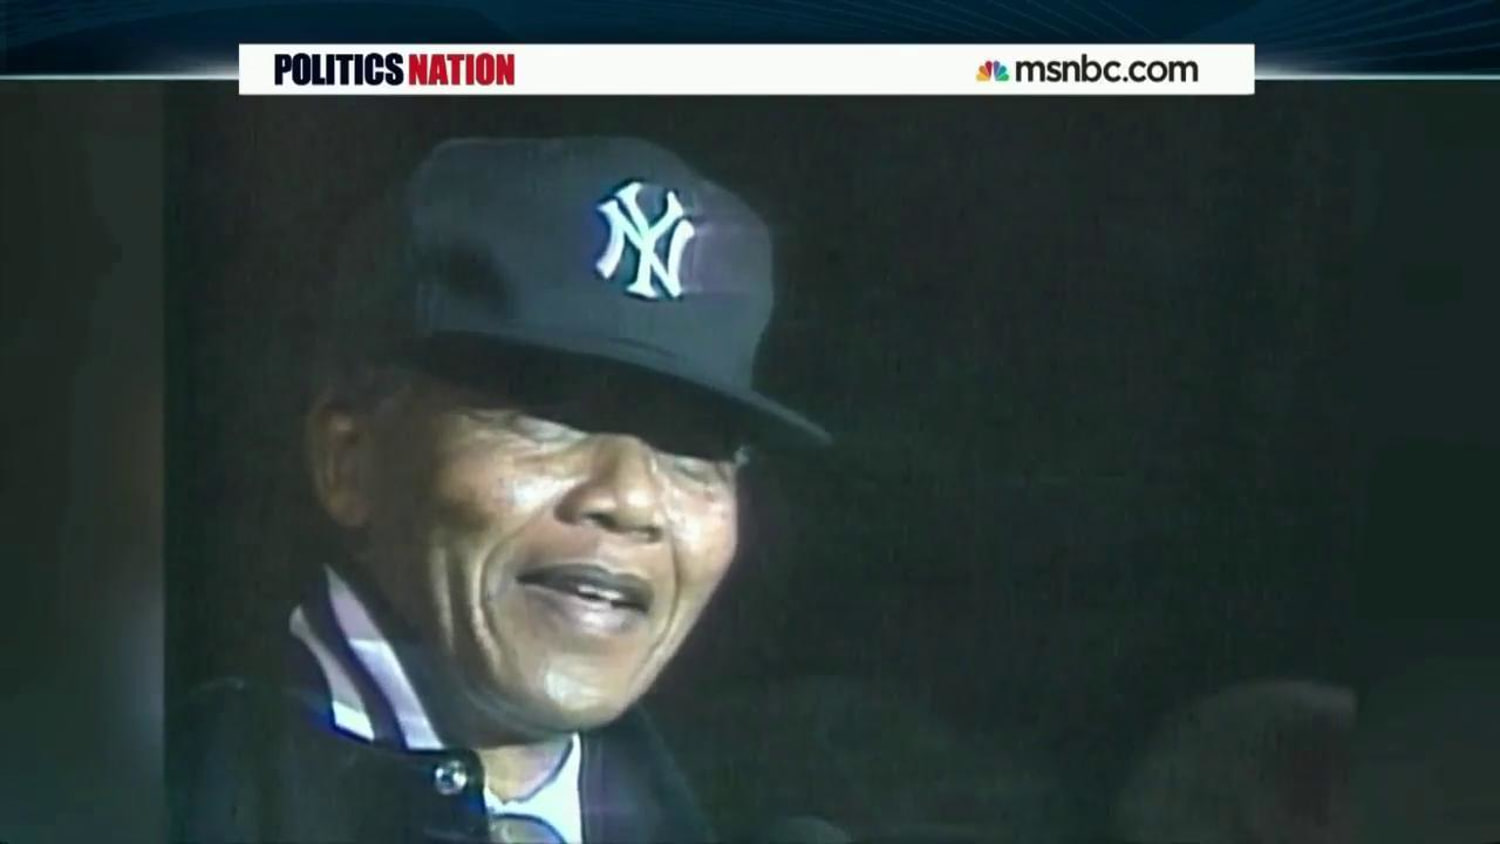 New York Yankees honor Nelson Mandela